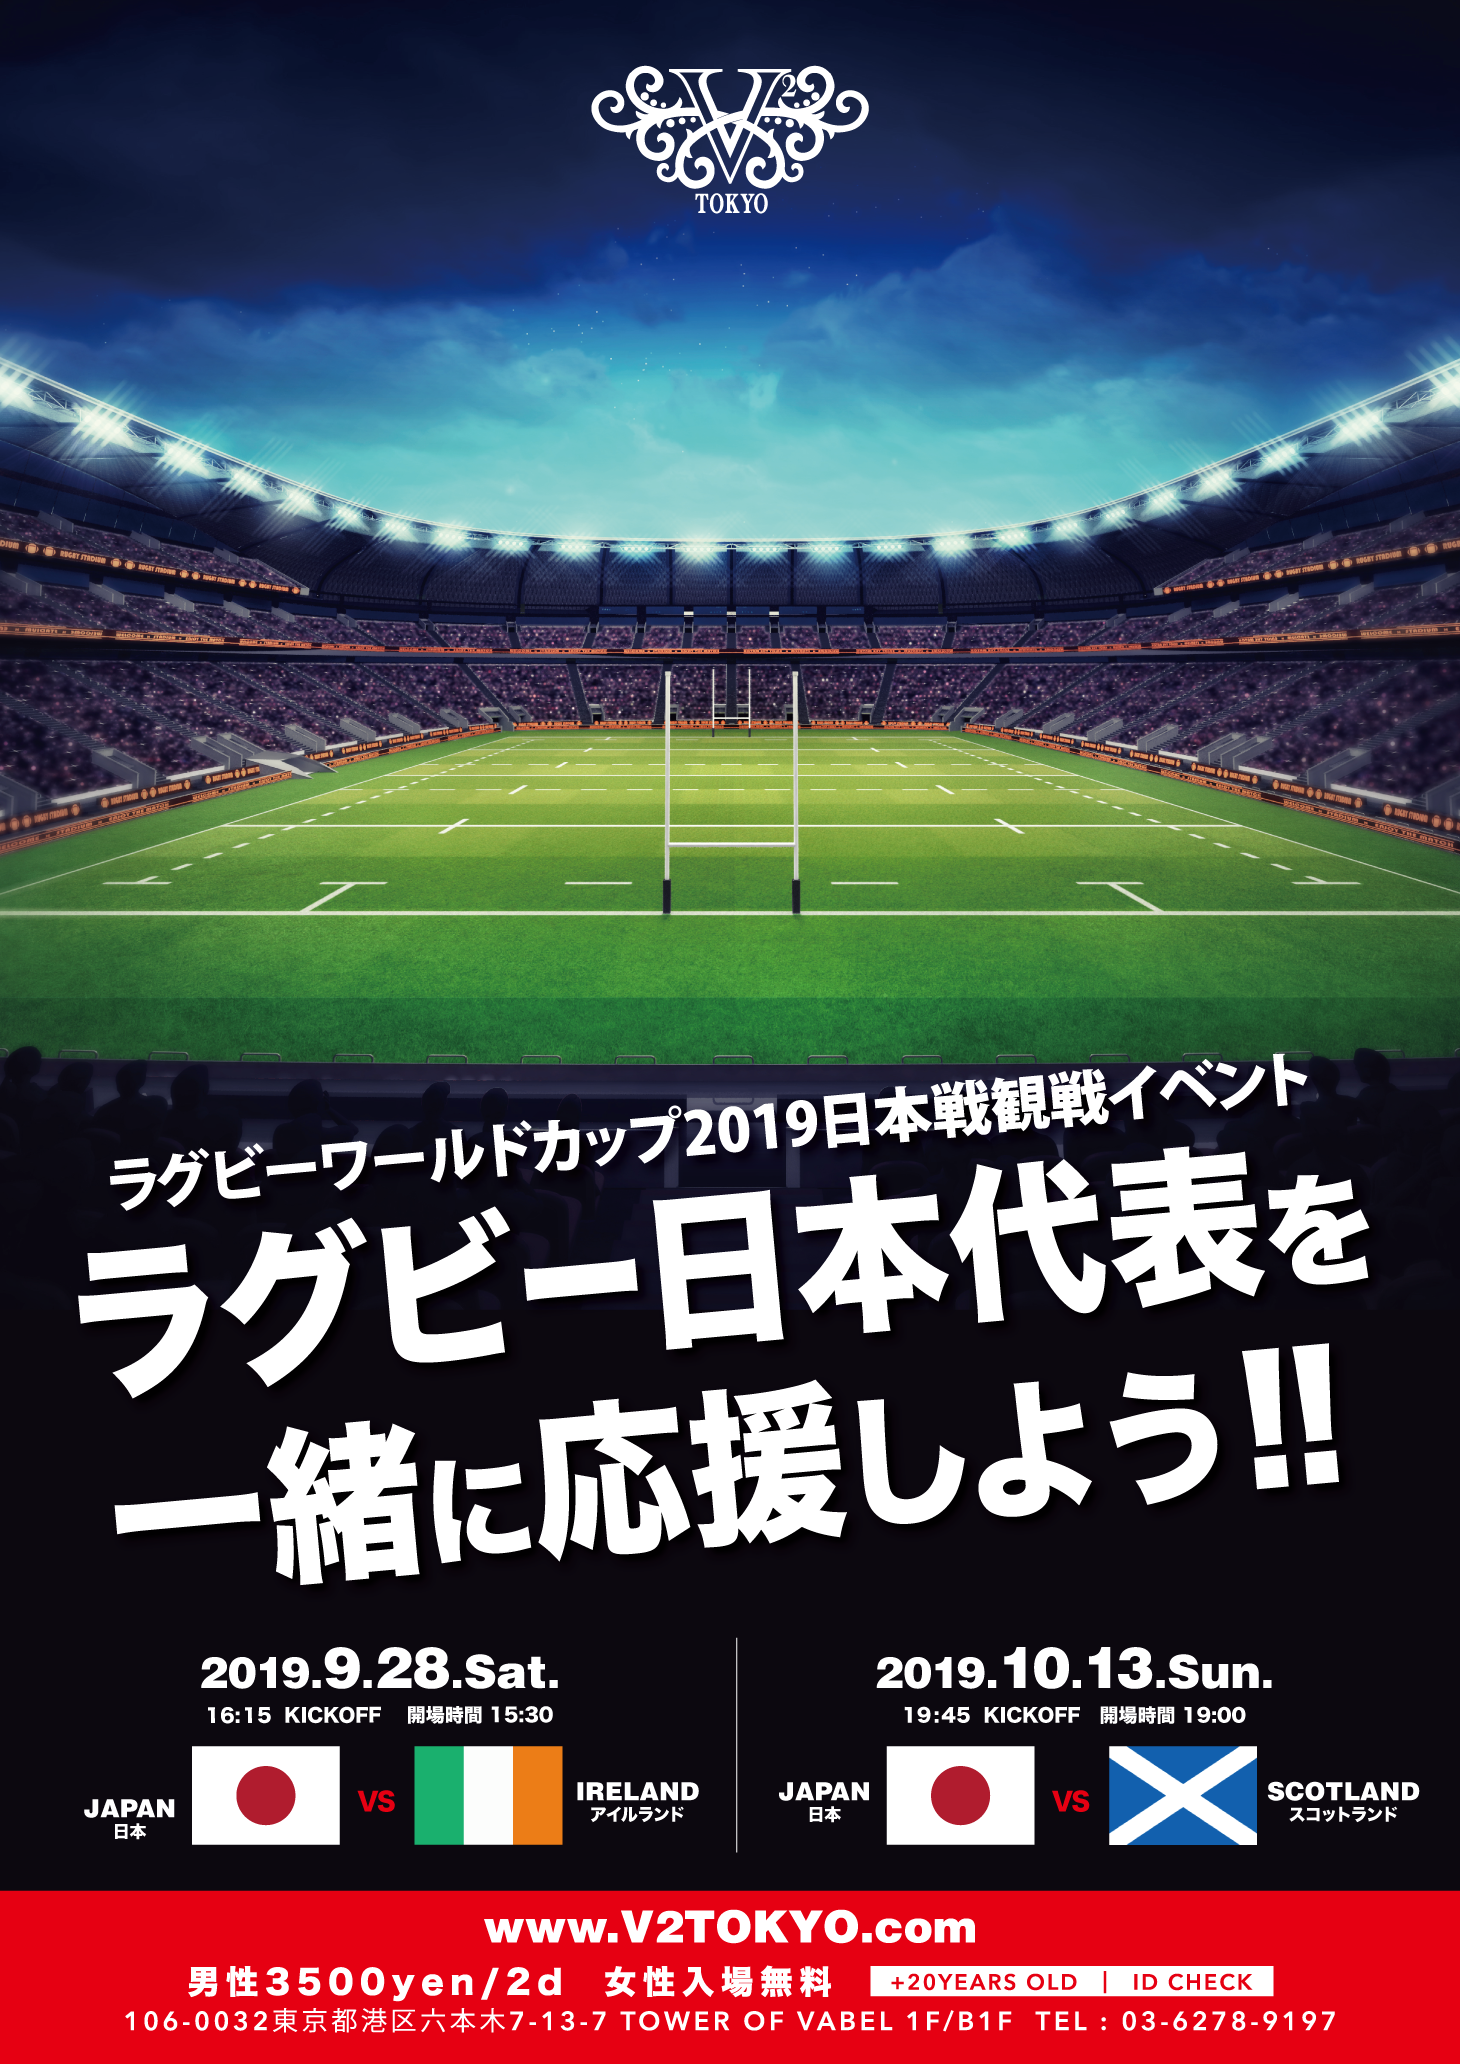 9 ⽉28 ⽇(土)六本⽊V2 TOKYO ラグビーワールドカップ 2019 ⽇本戦観戦 